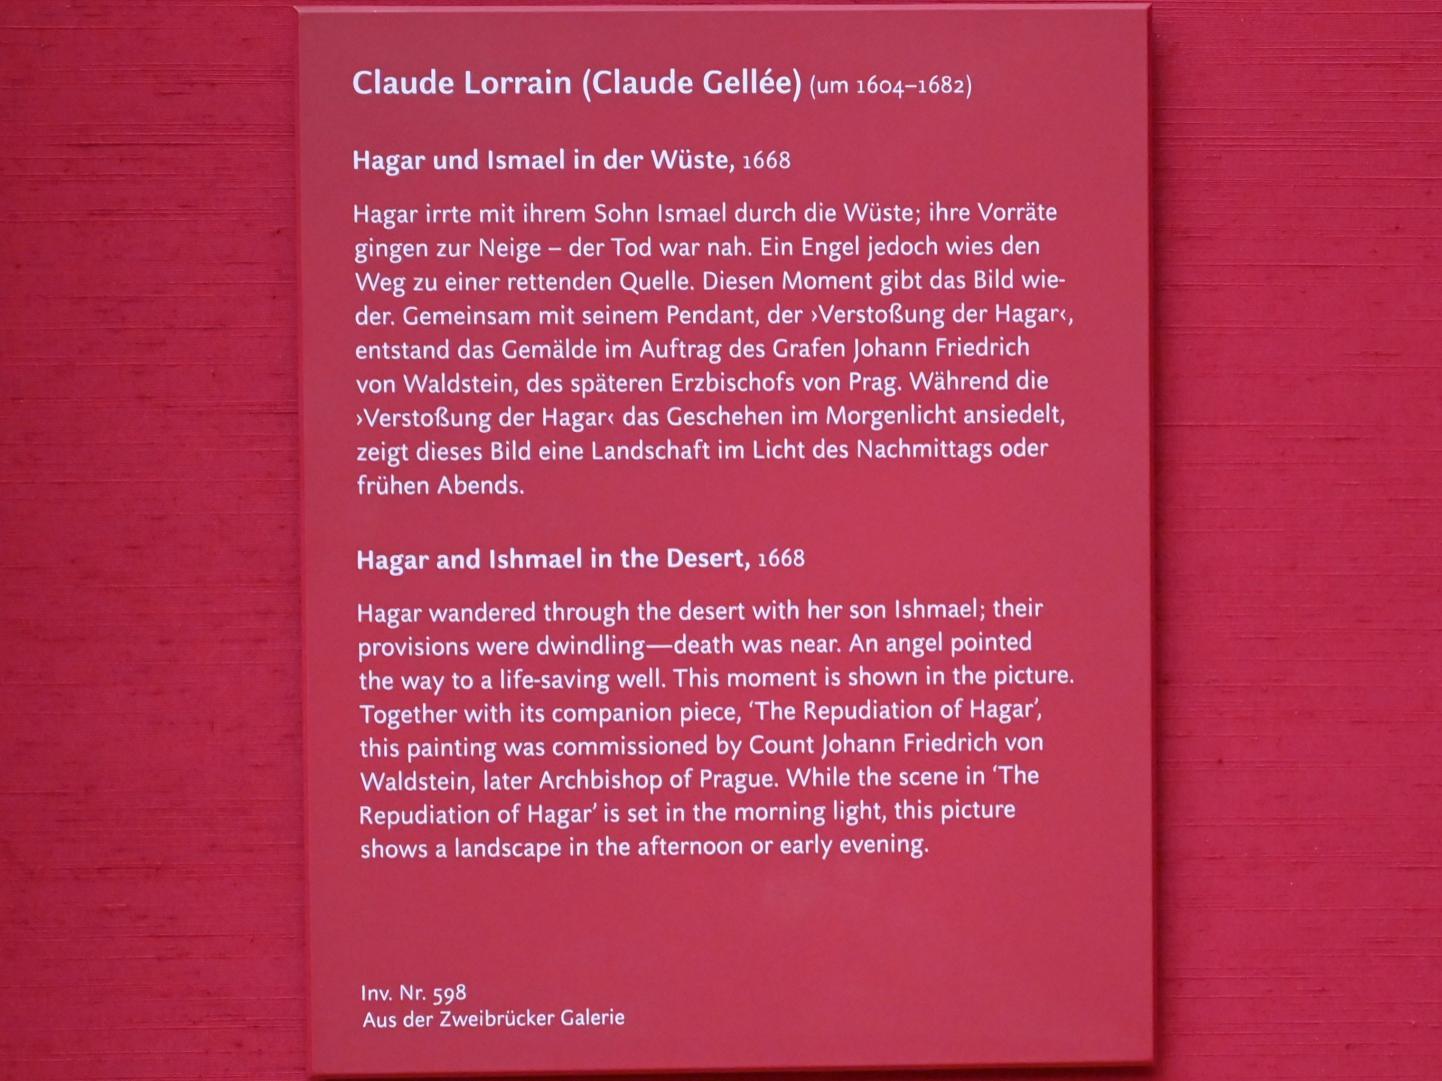 Claude Lorrain (Claude Gellée) (1628–1681), Hagar und Ismael in der Wüste, München, Alte Pinakothek, Obergeschoss Saal XI, 1668, Bild 2/2